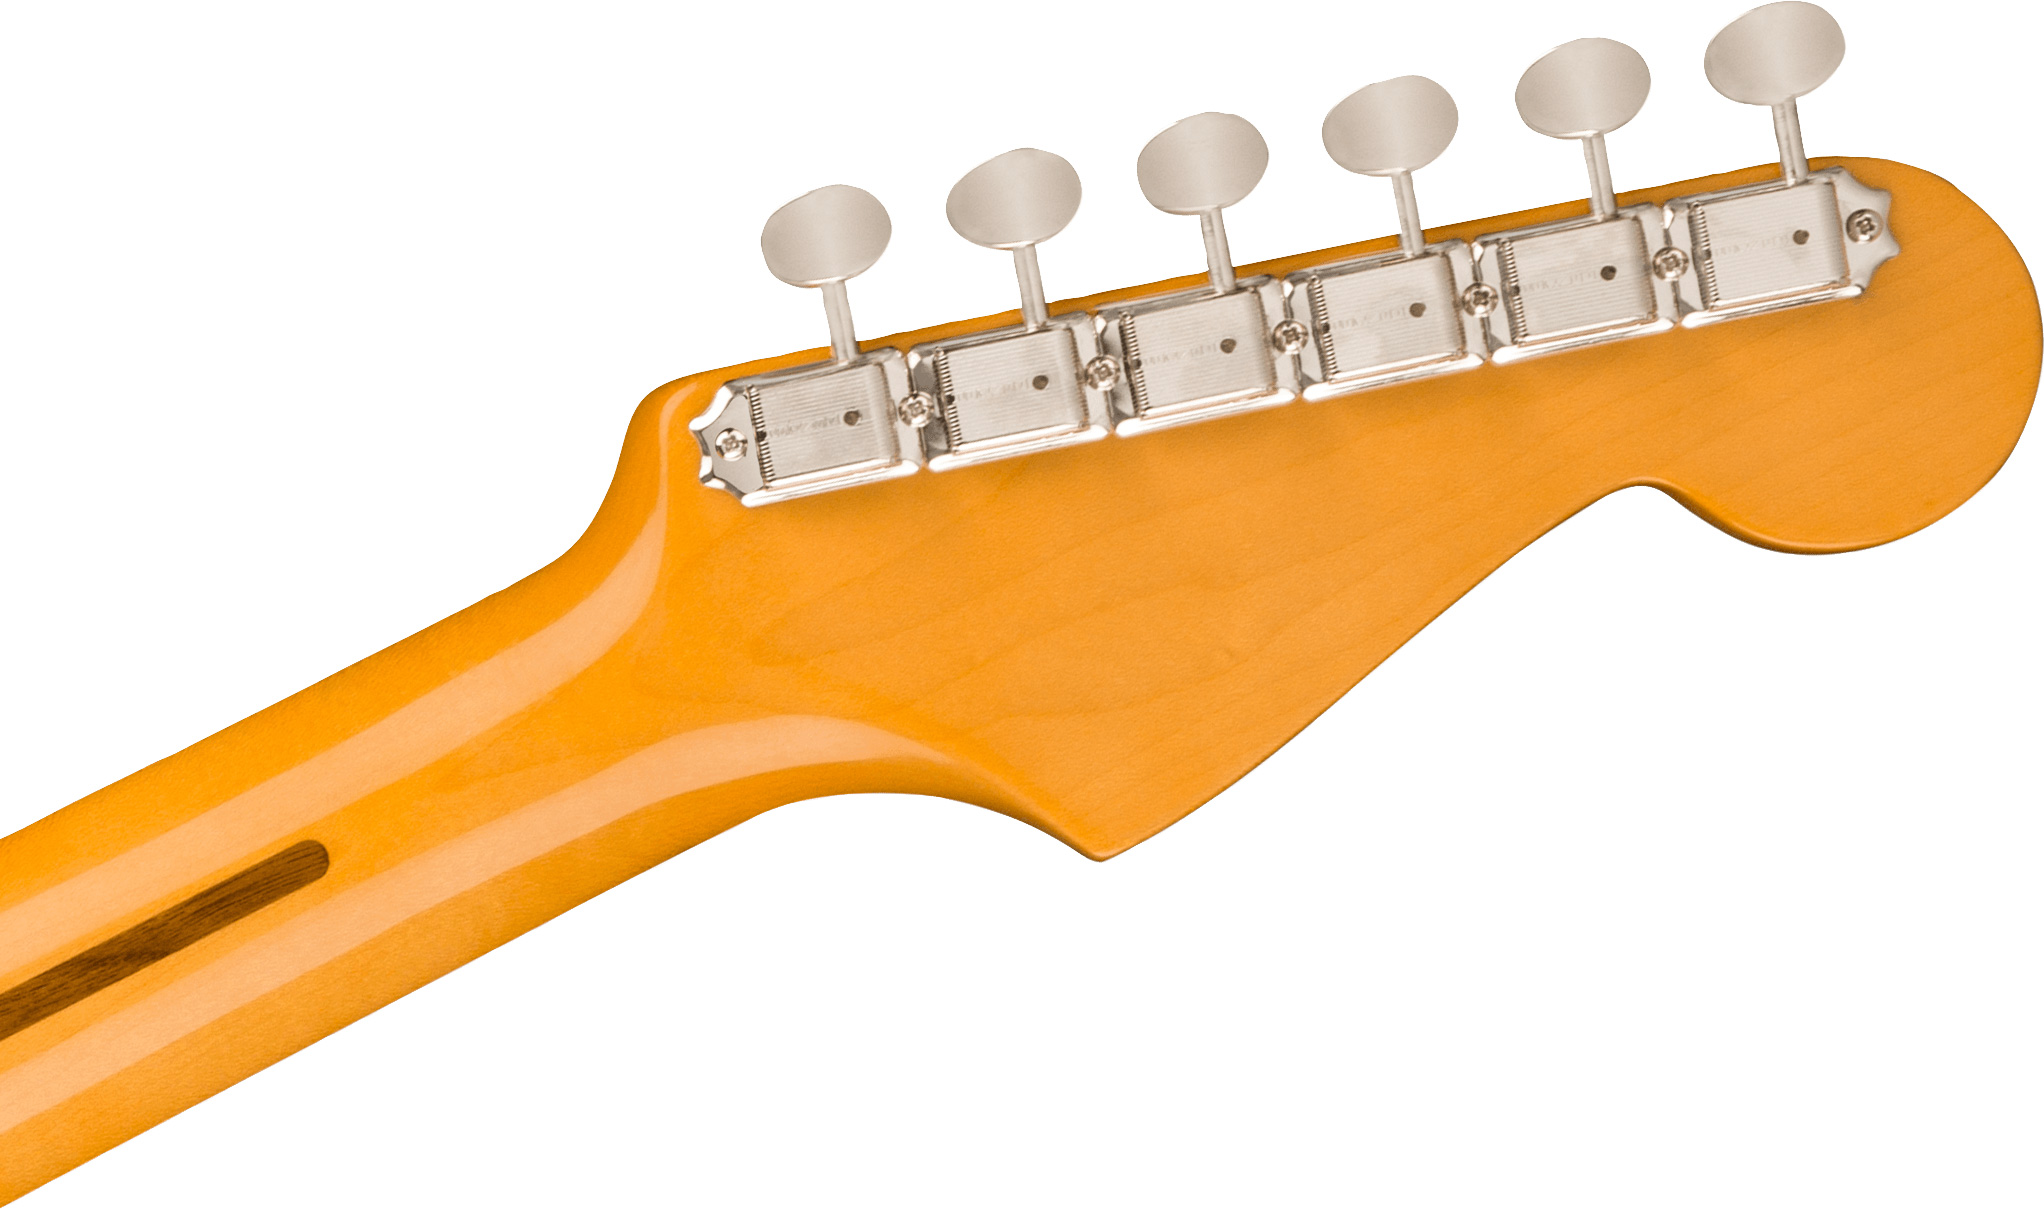 Fender Strat 1957 American Vintage Ii Lh Gaucher Usa 3s Trem Mn - 2-color Sunburst - Linkshandige elektrische gitaar - Variation 3